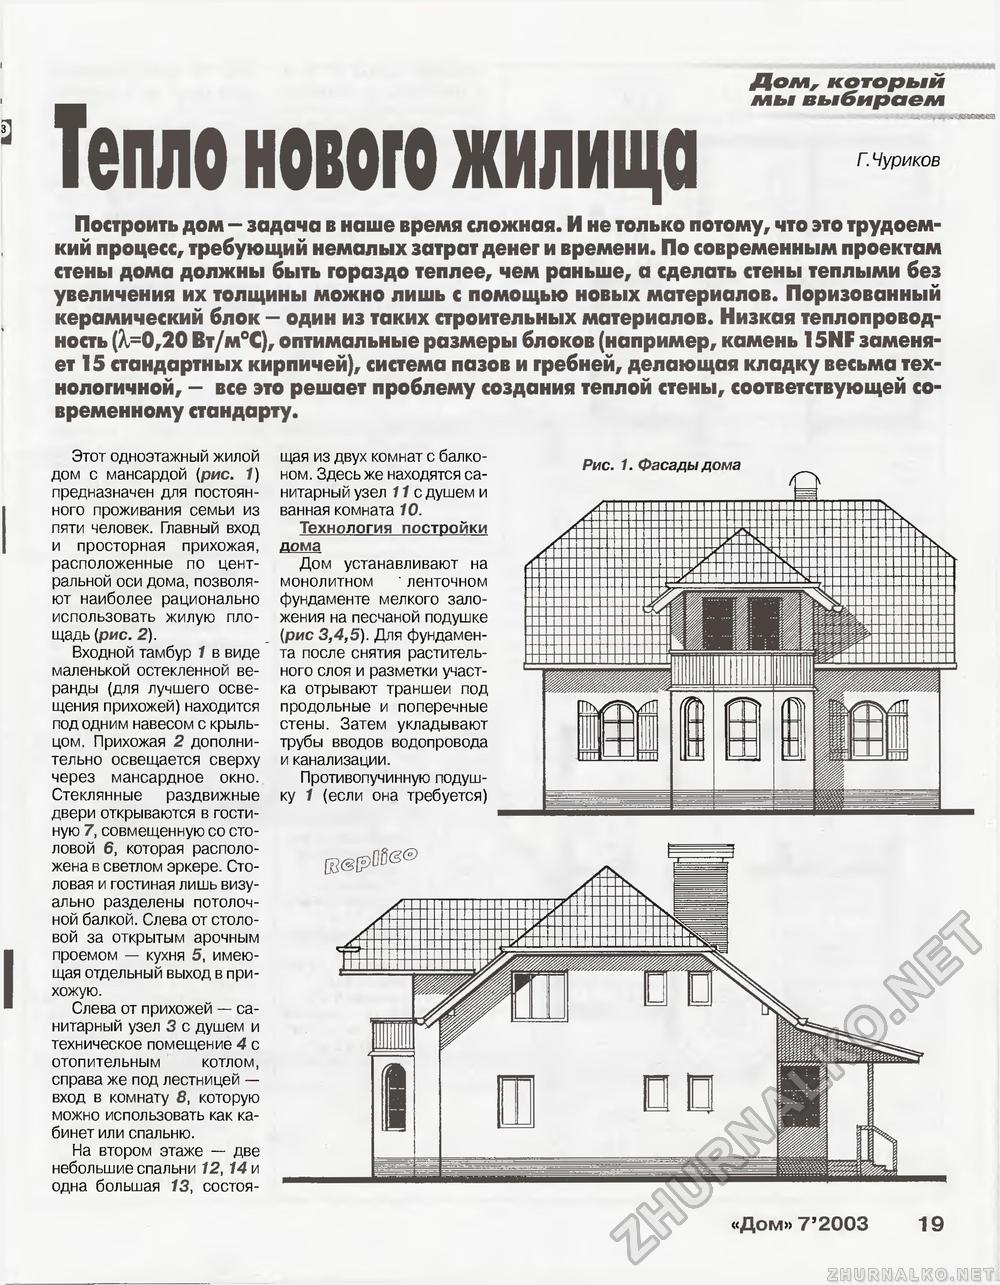 Дом 2003-07, страница 19